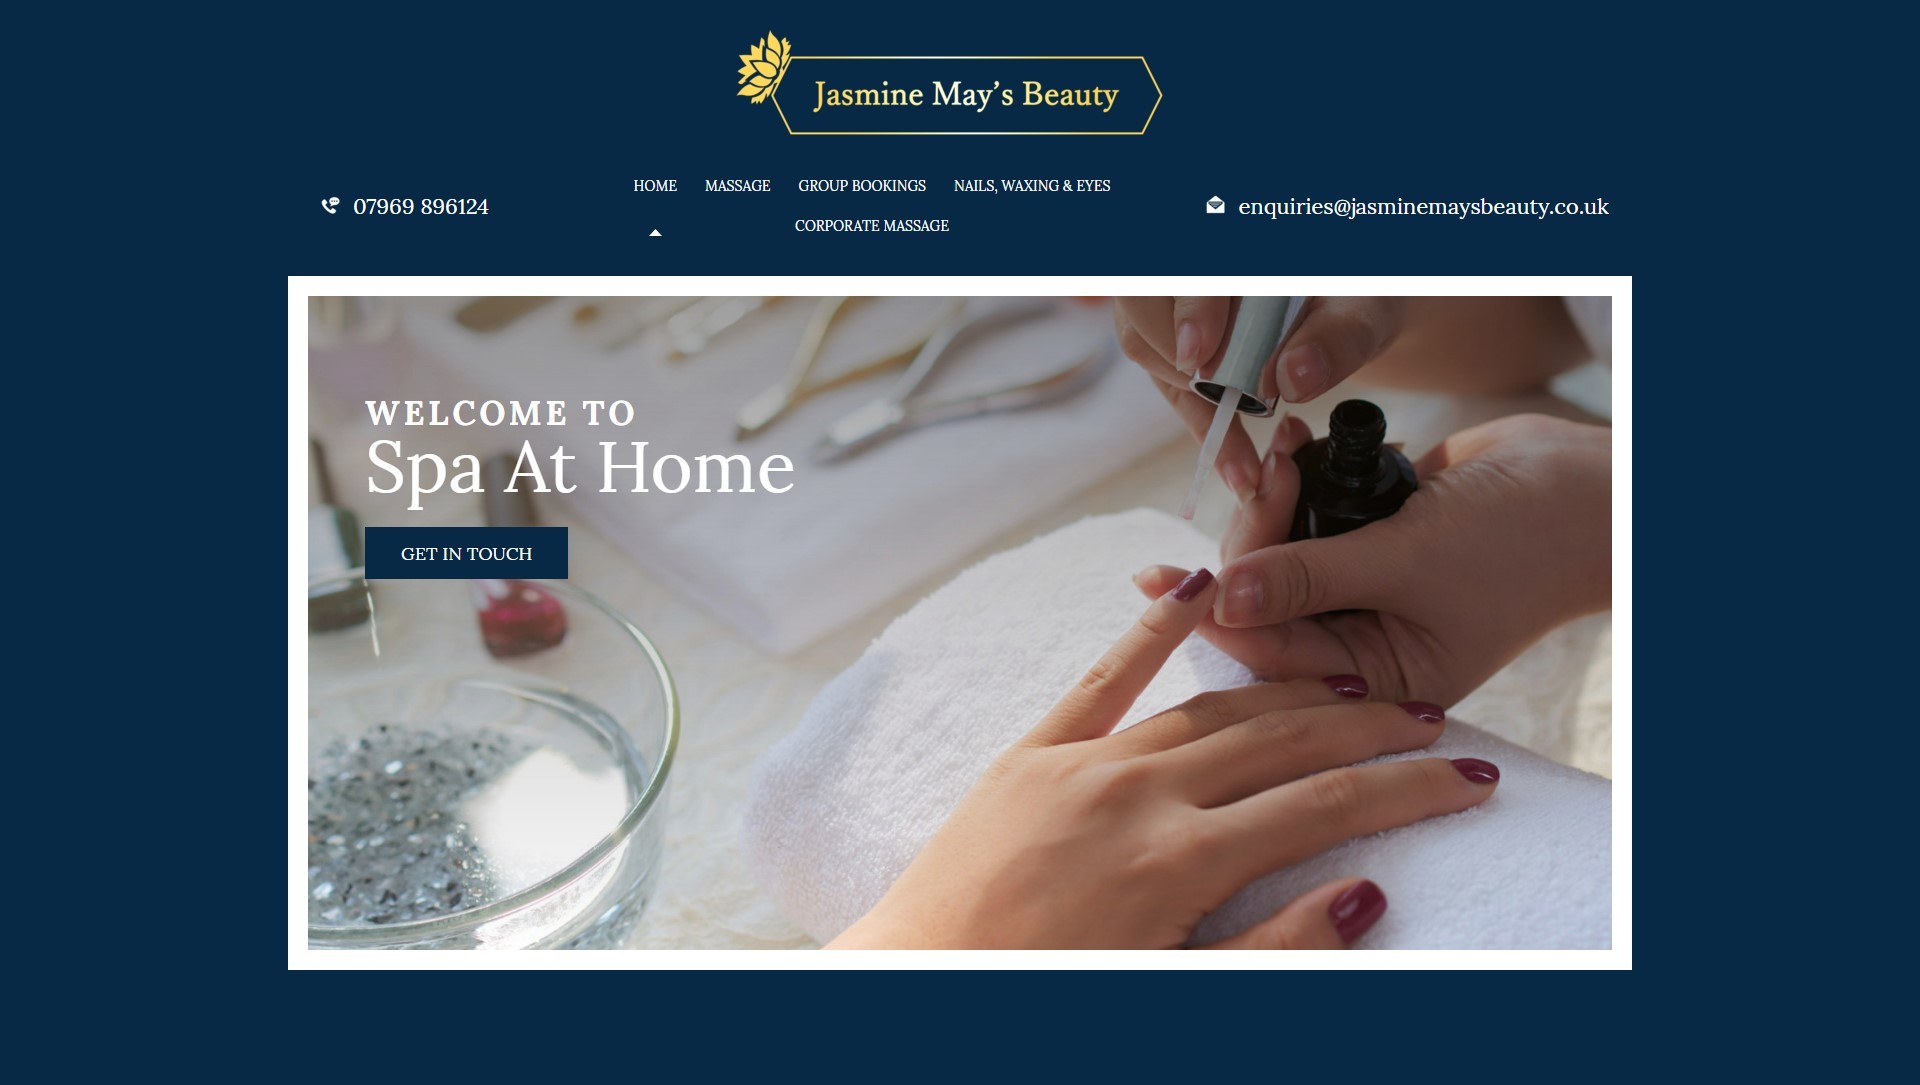 Jasmine May's Beauty website design